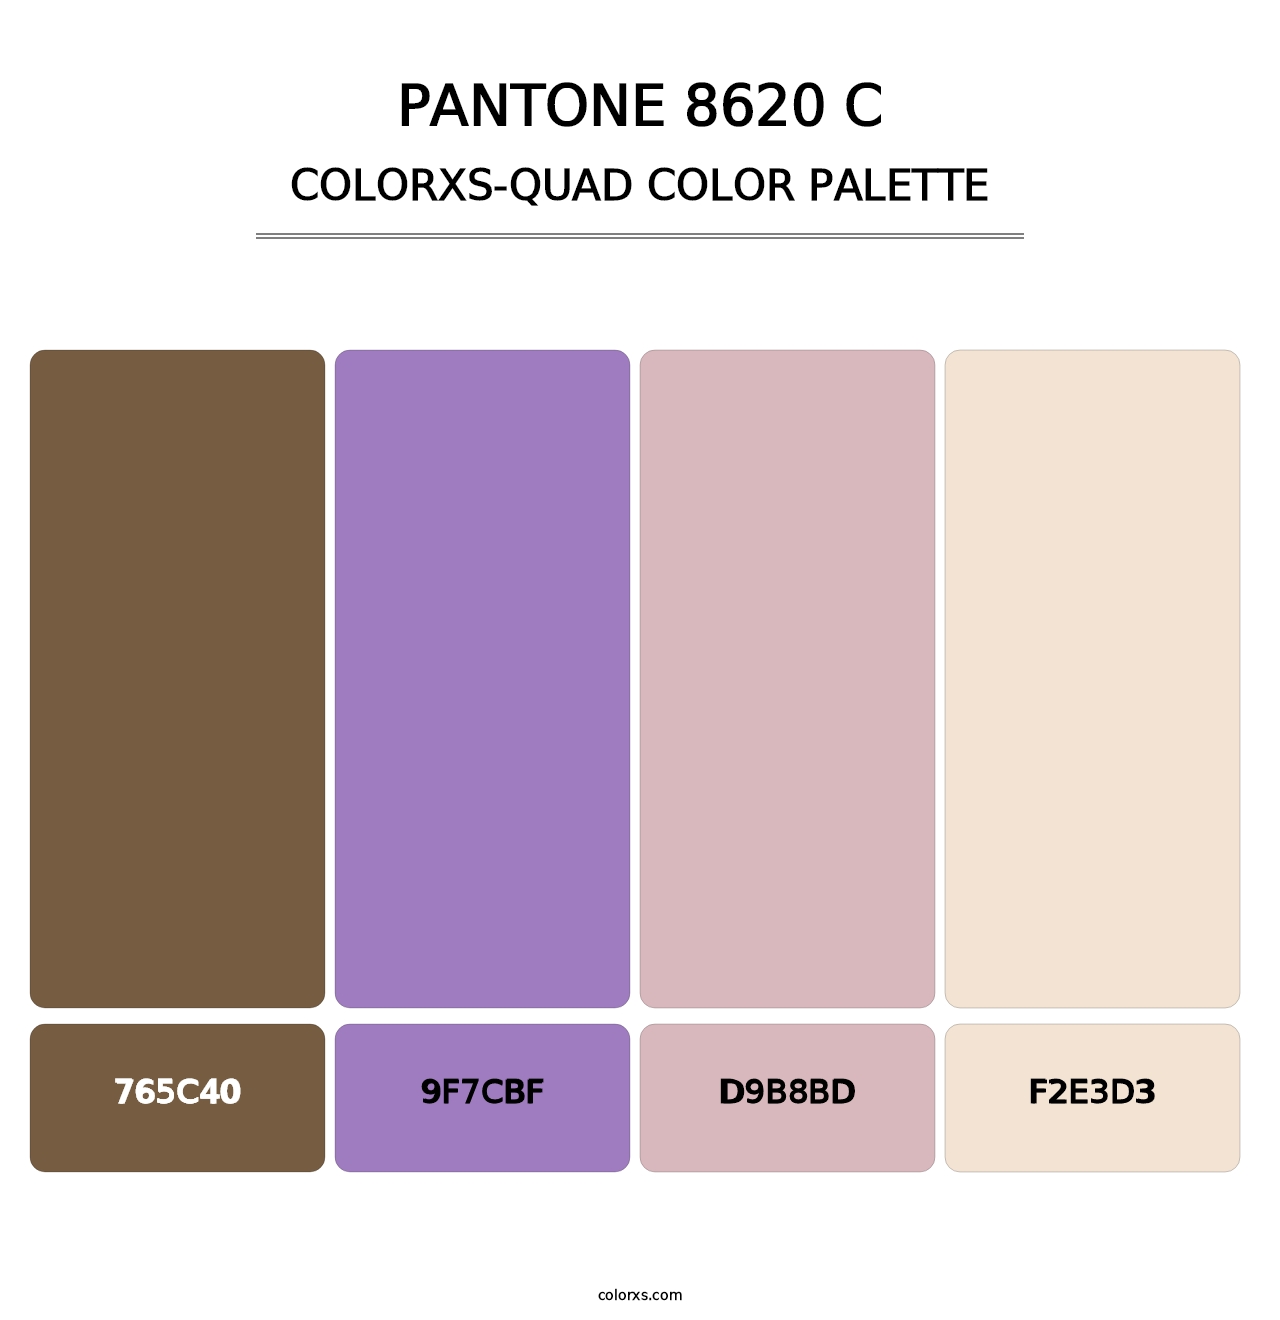 PANTONE 8620 C - Colorxs Quad Palette